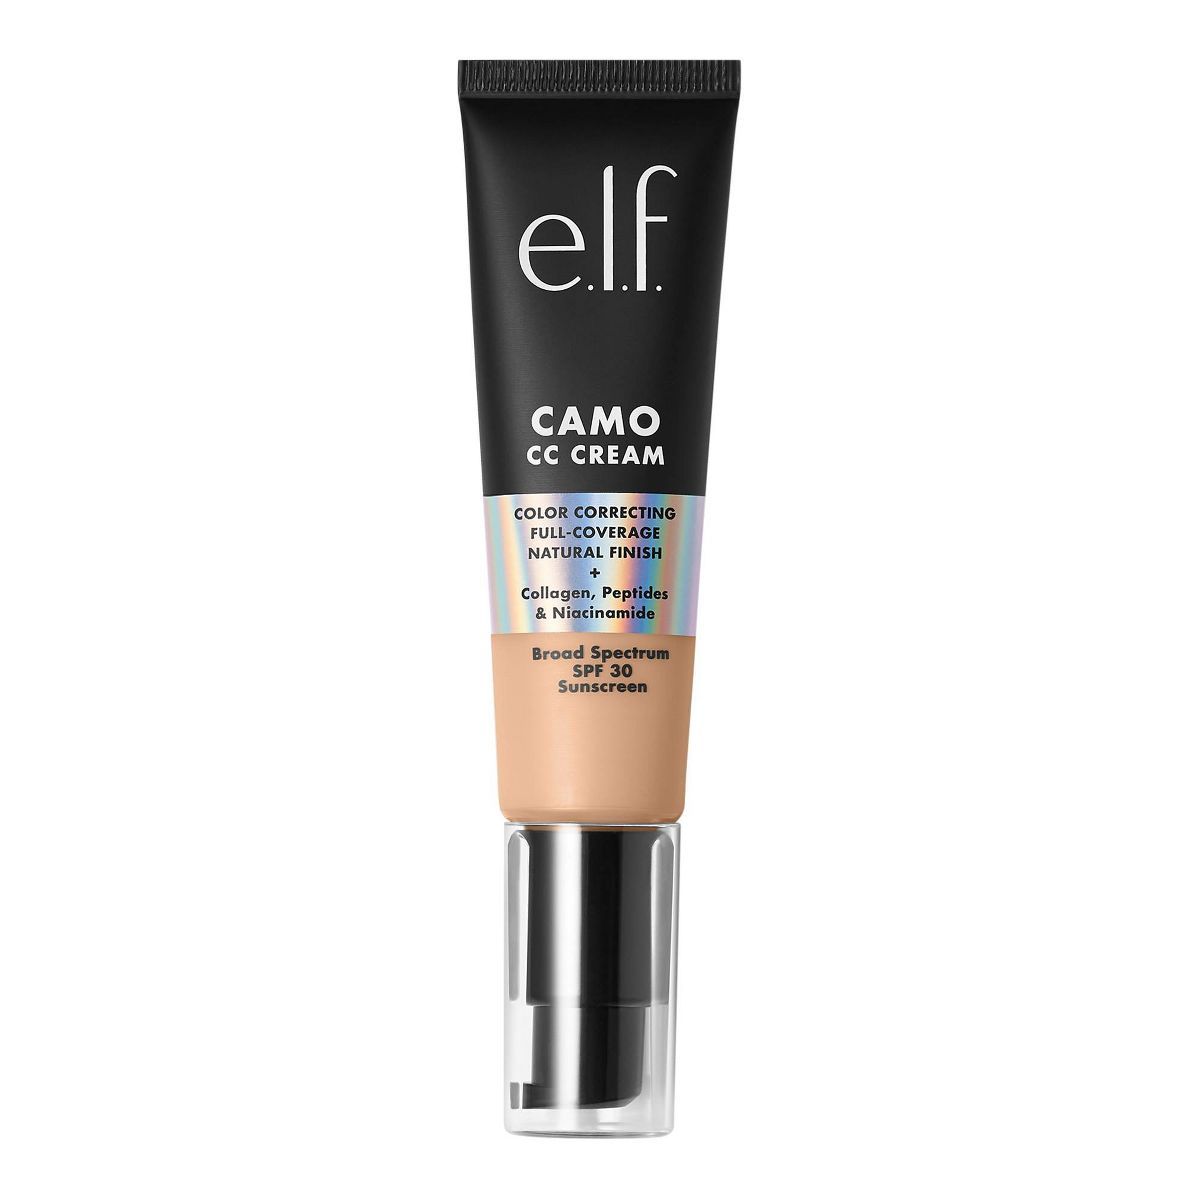 e.l.f. Camo CC Cream - 1.05oz | Target